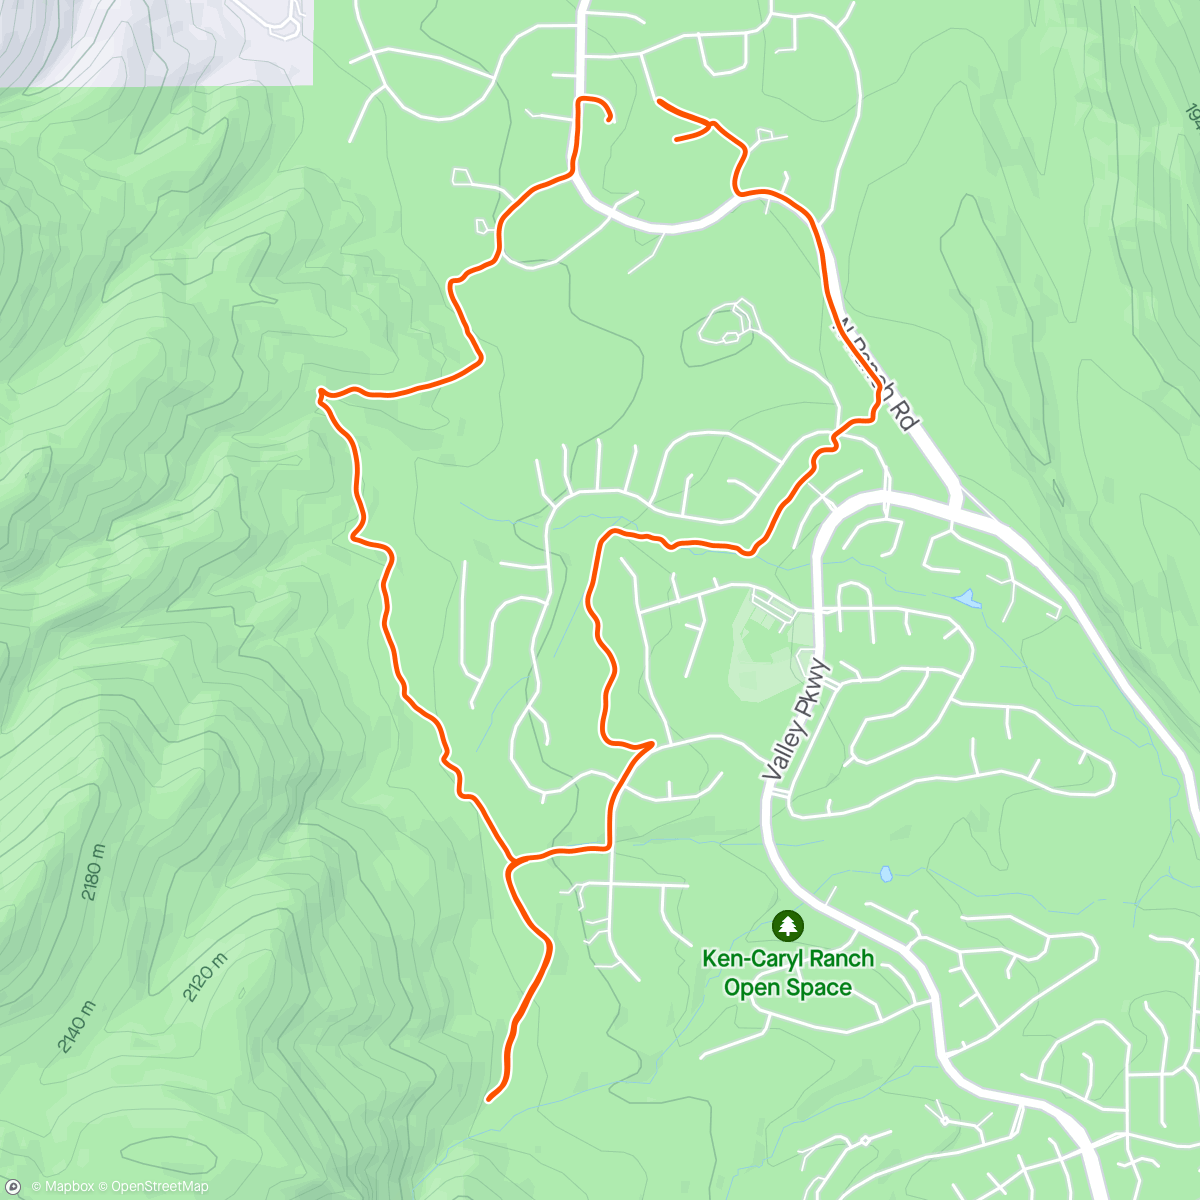 アクティビティ「Dusty trail run」の地図